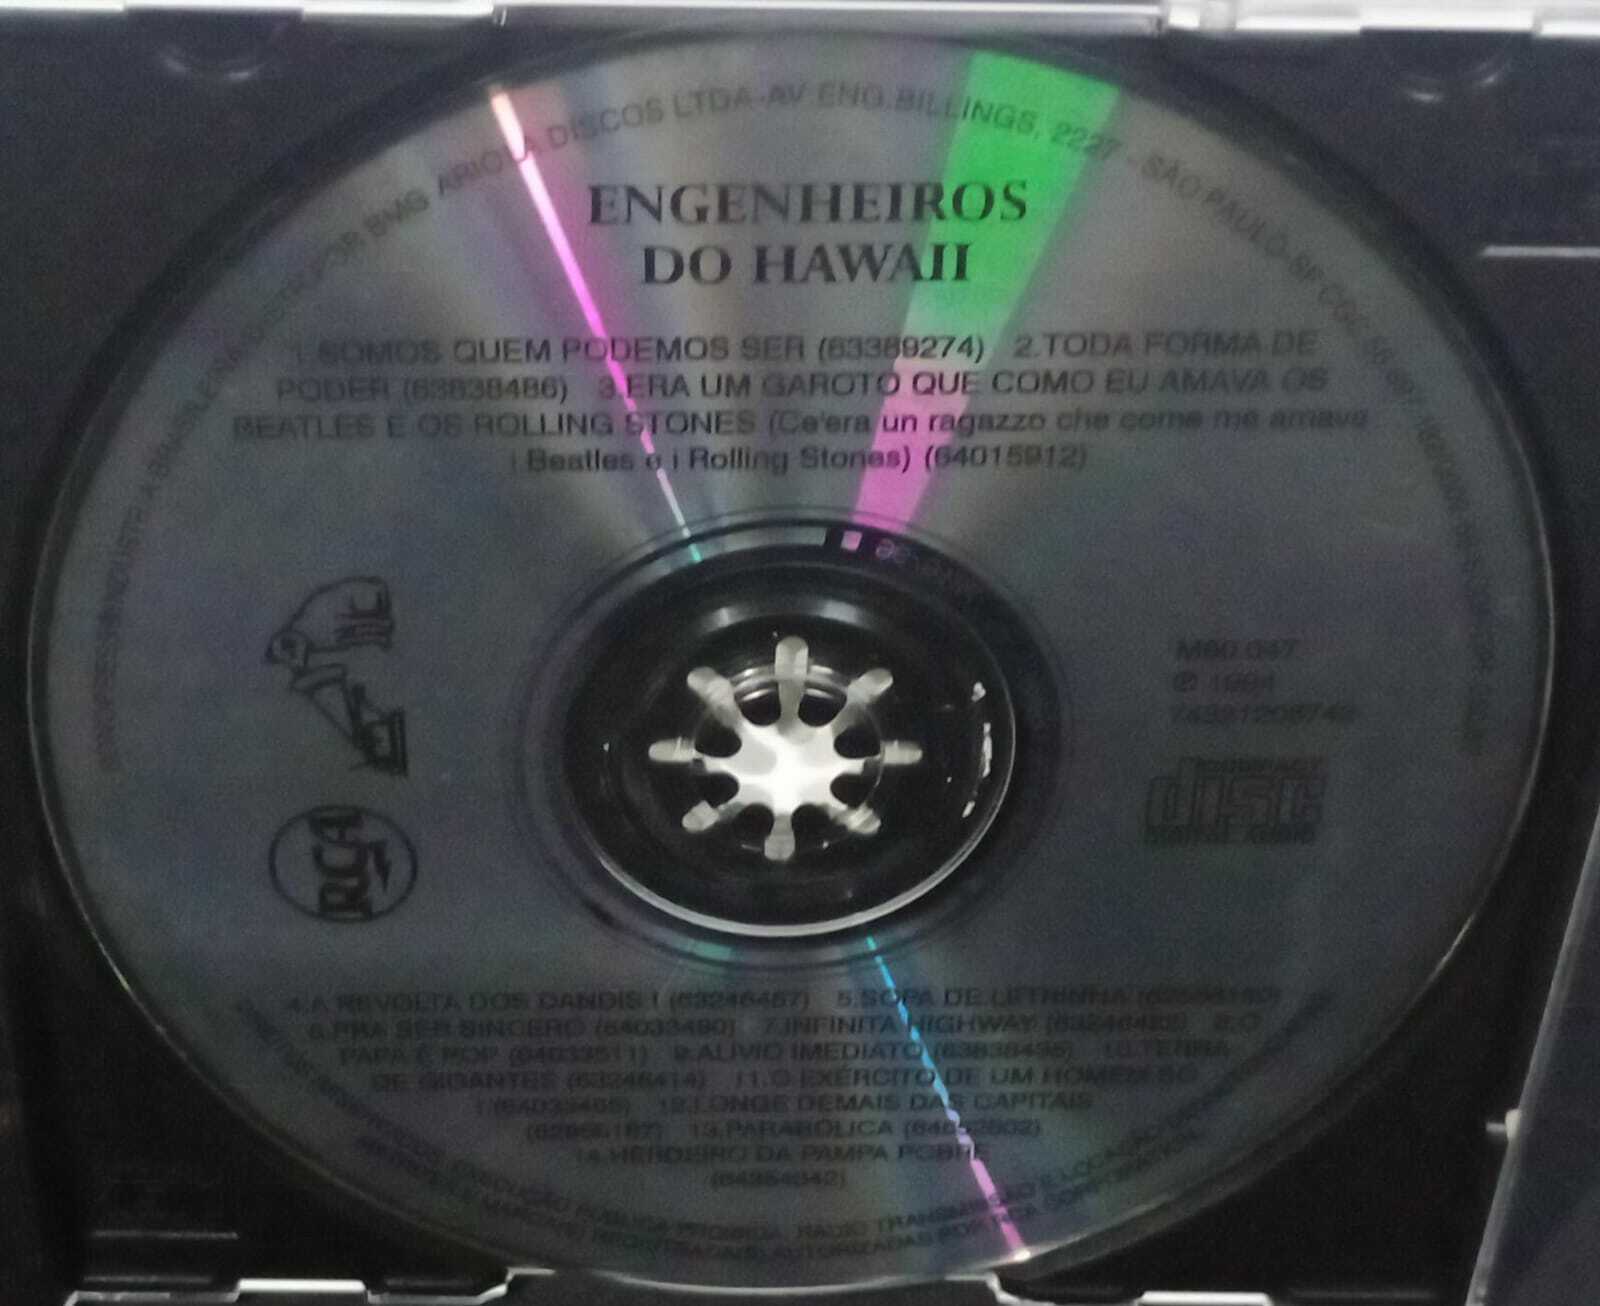 CD - Engenheiros do Hawaii - Acervo Especial